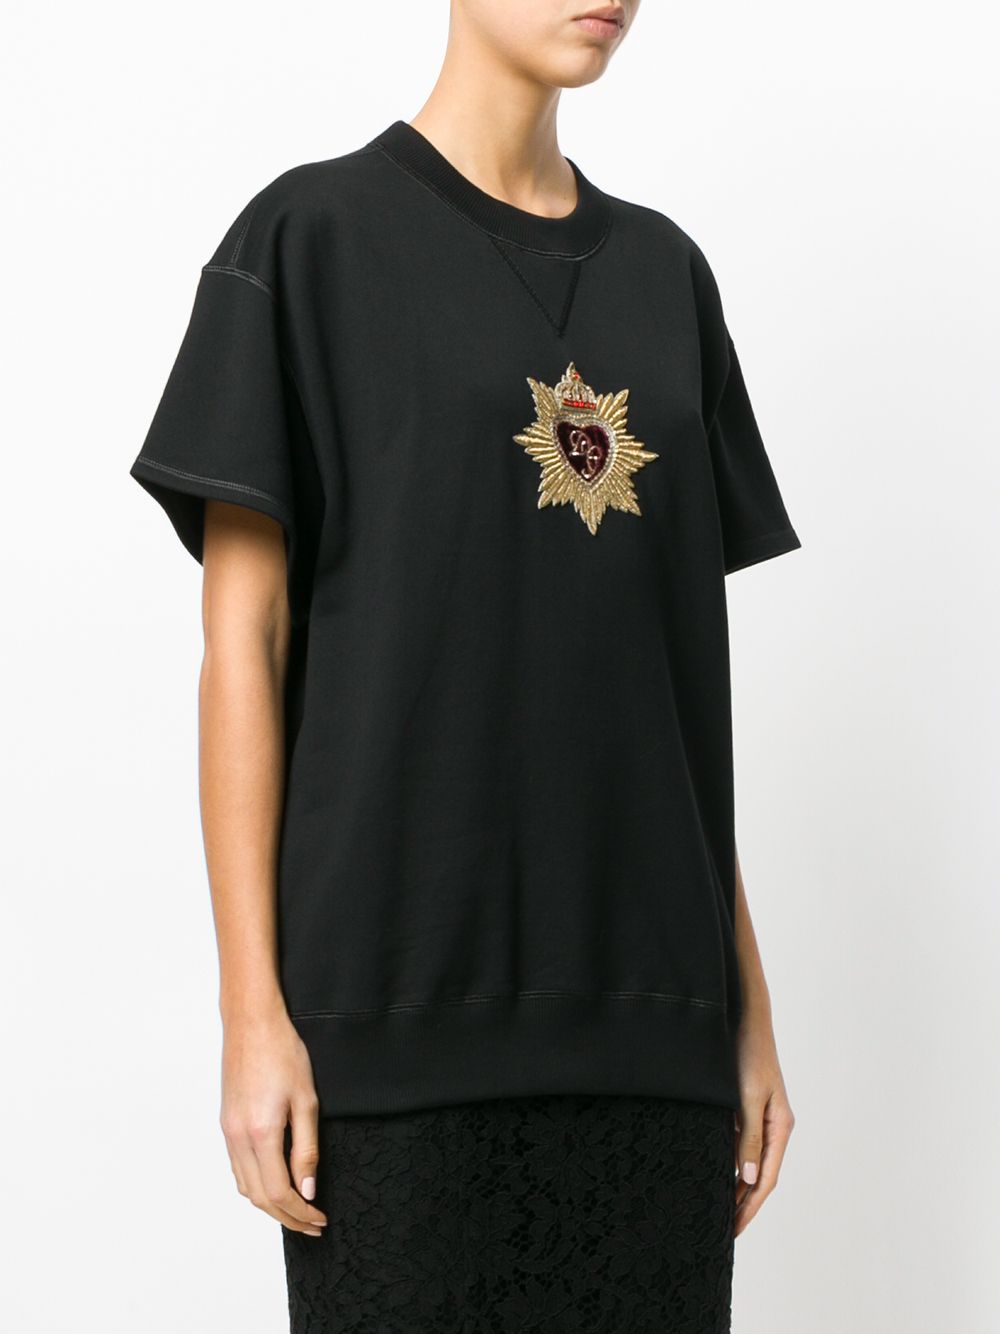 фото Dolce & Gabbana футболка с вышивкой ордена